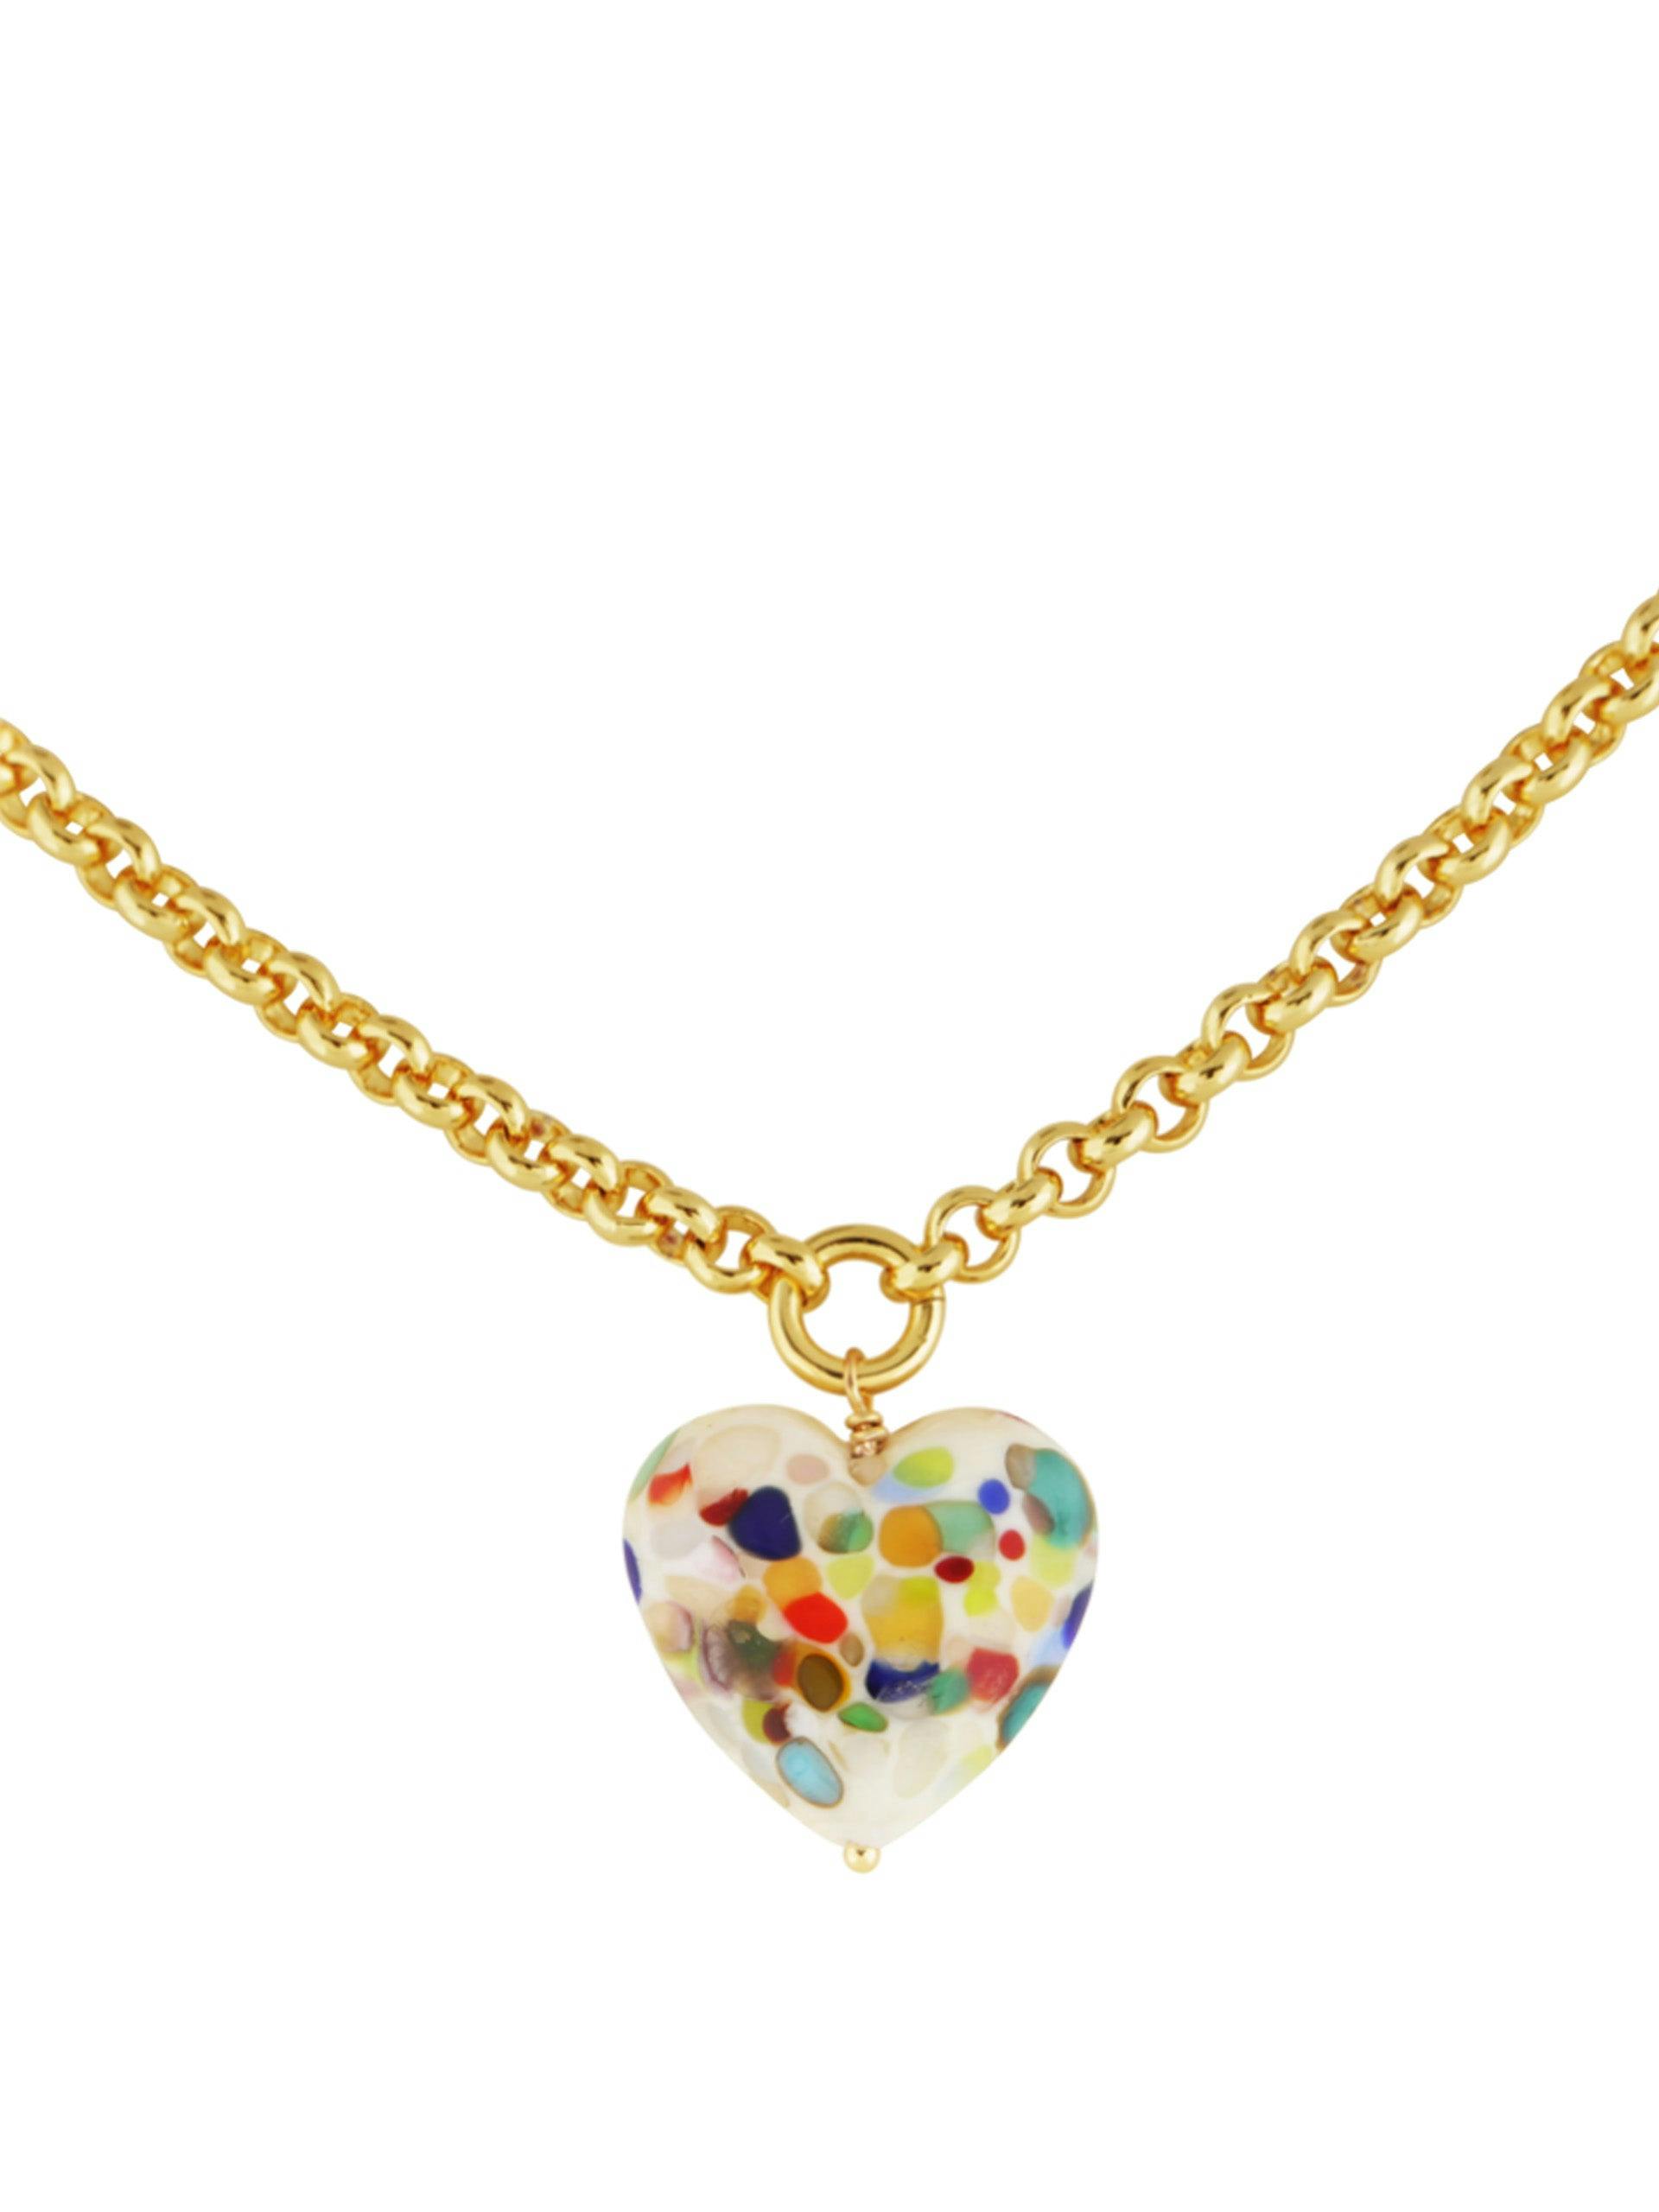 XL Zero Waste heart necklace